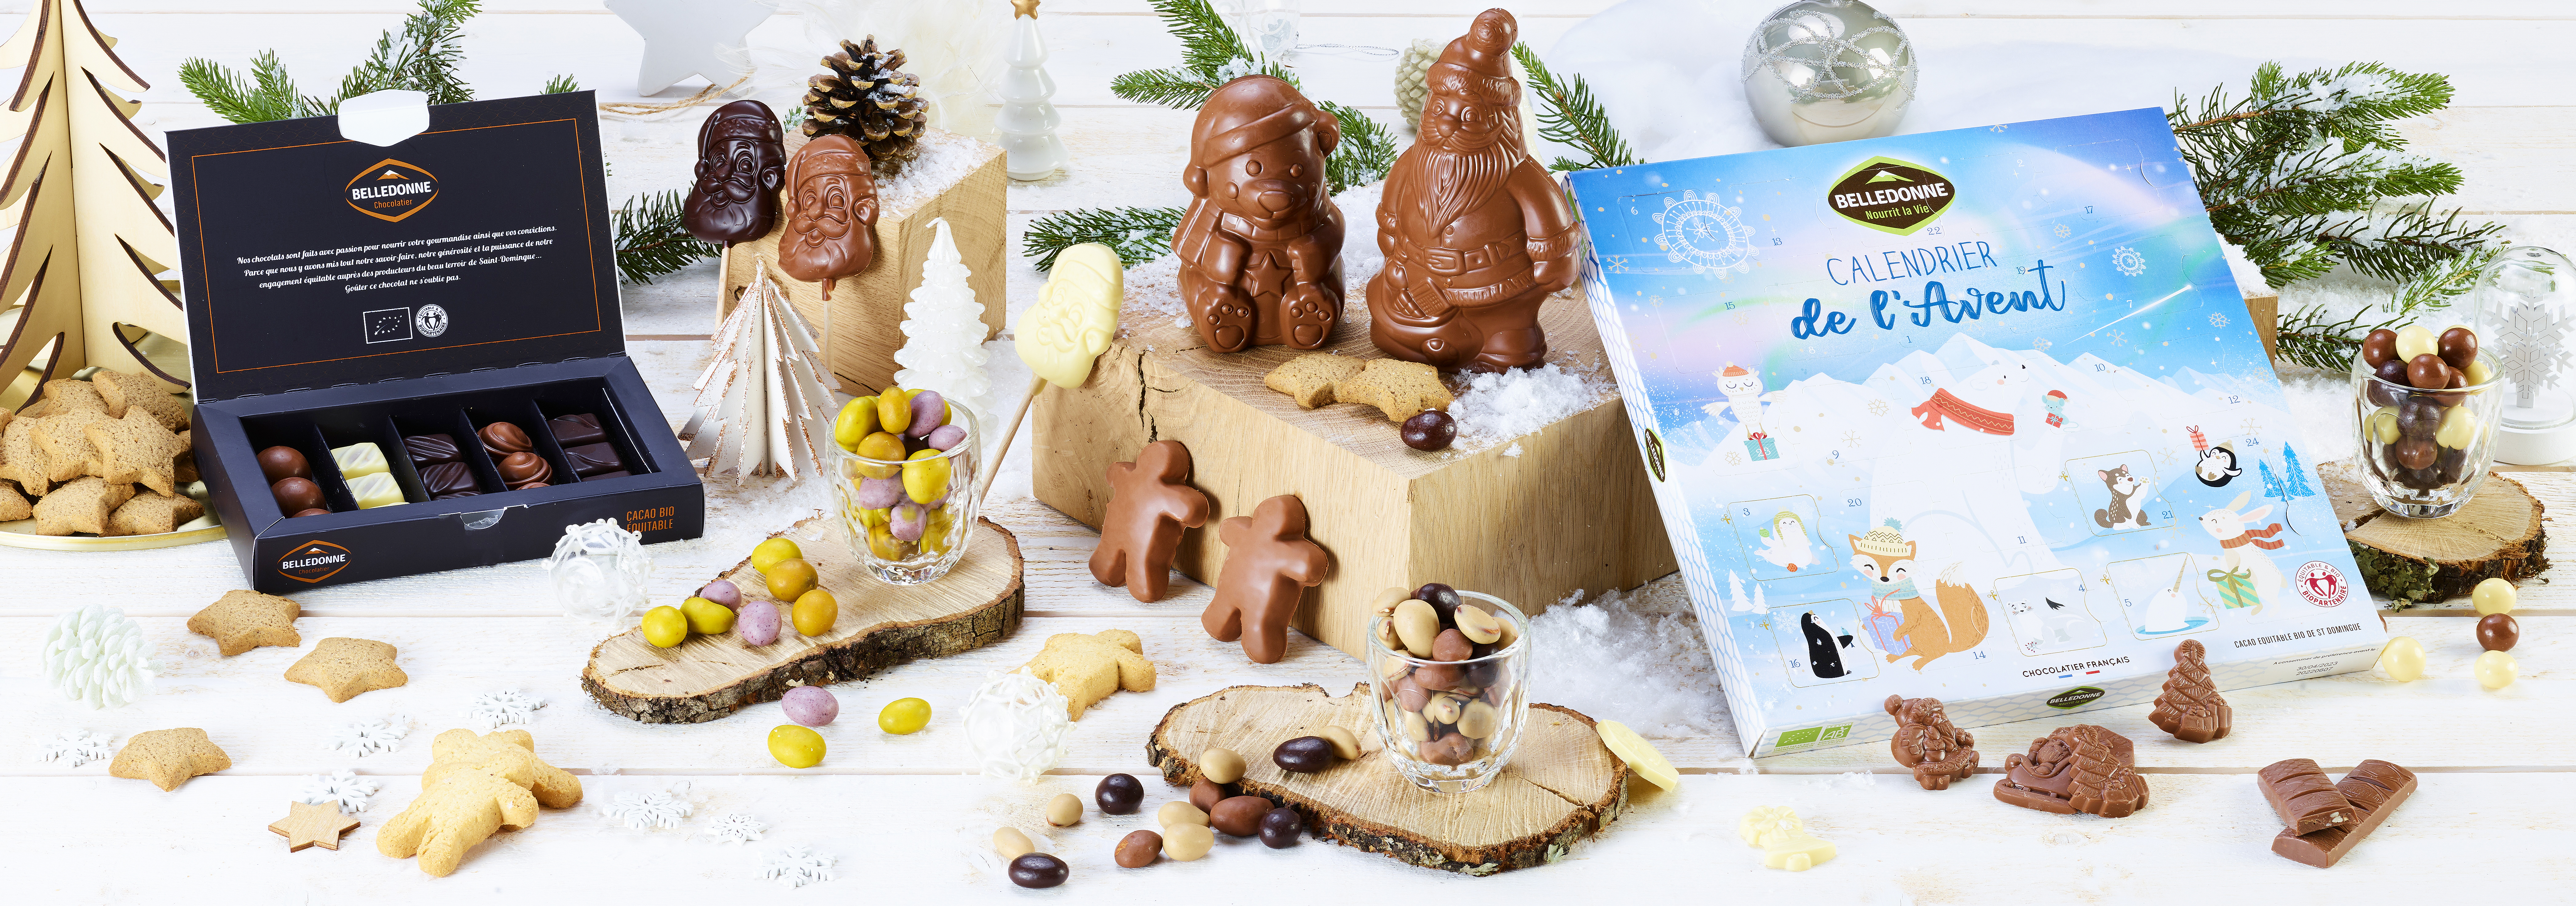 Des Fêtes De Fin Dannée Bio Et Responsable Avec Belledonne Pains Biscuits Et Chocolats De Noël